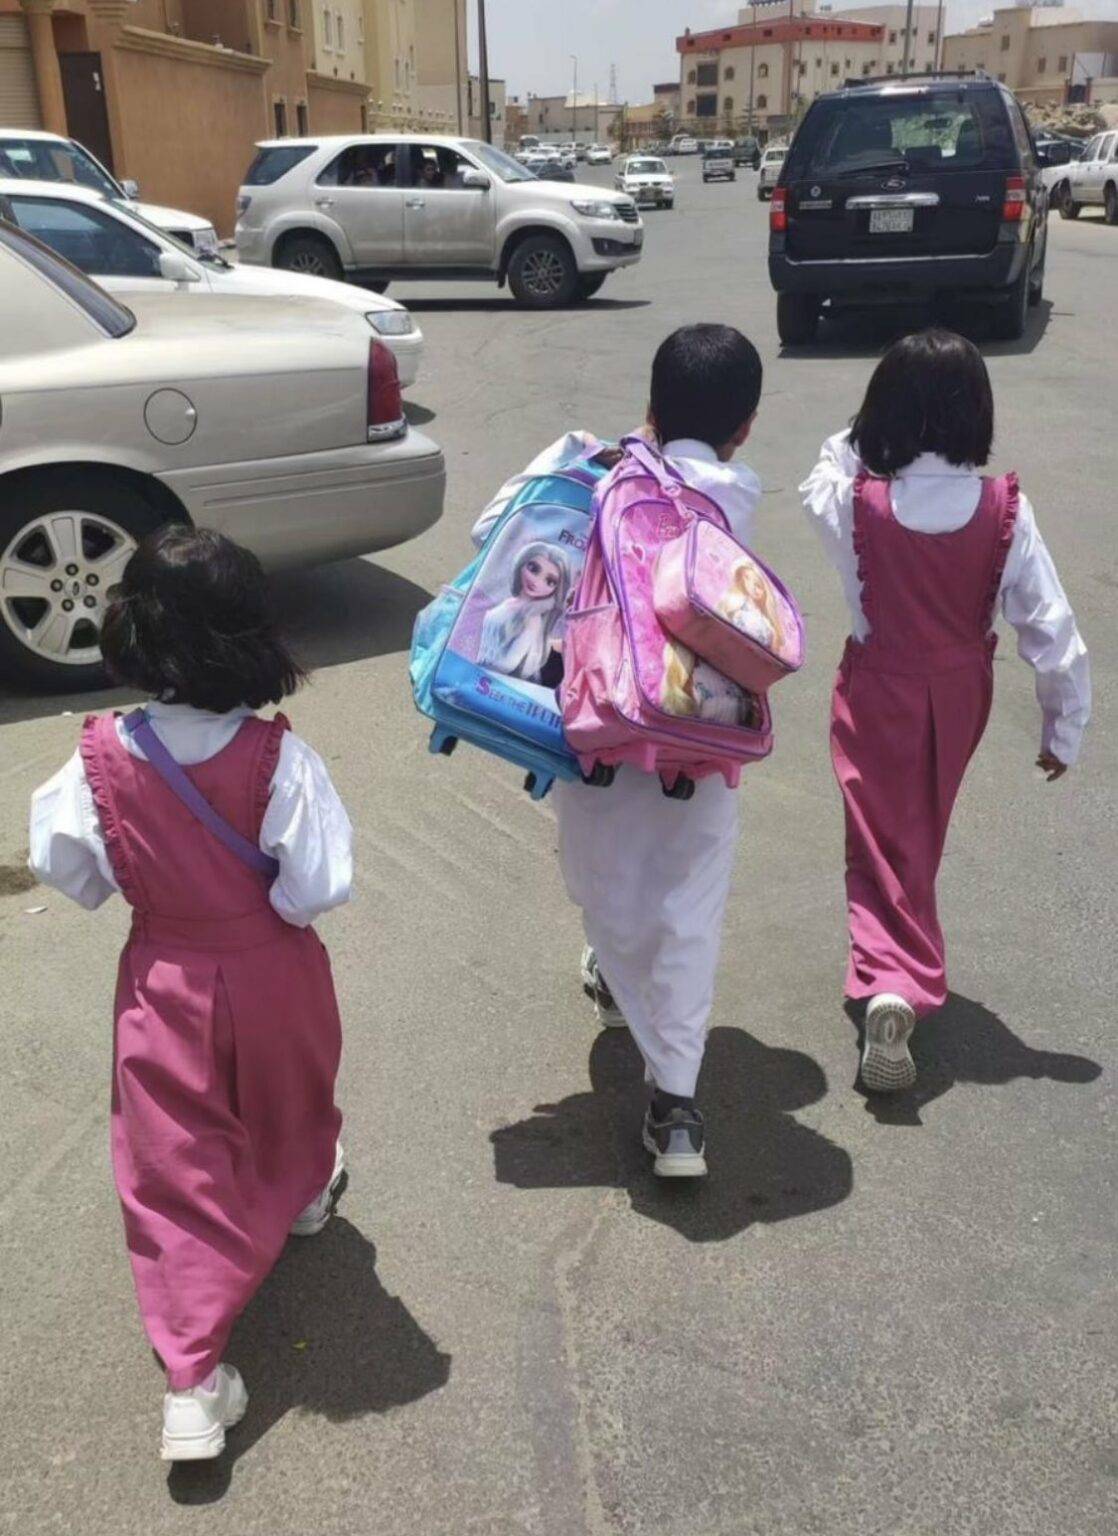 تفاعل واسع لصورة طفل يحمل حقائب أختيه أثناء ذهابهم للمدرسة